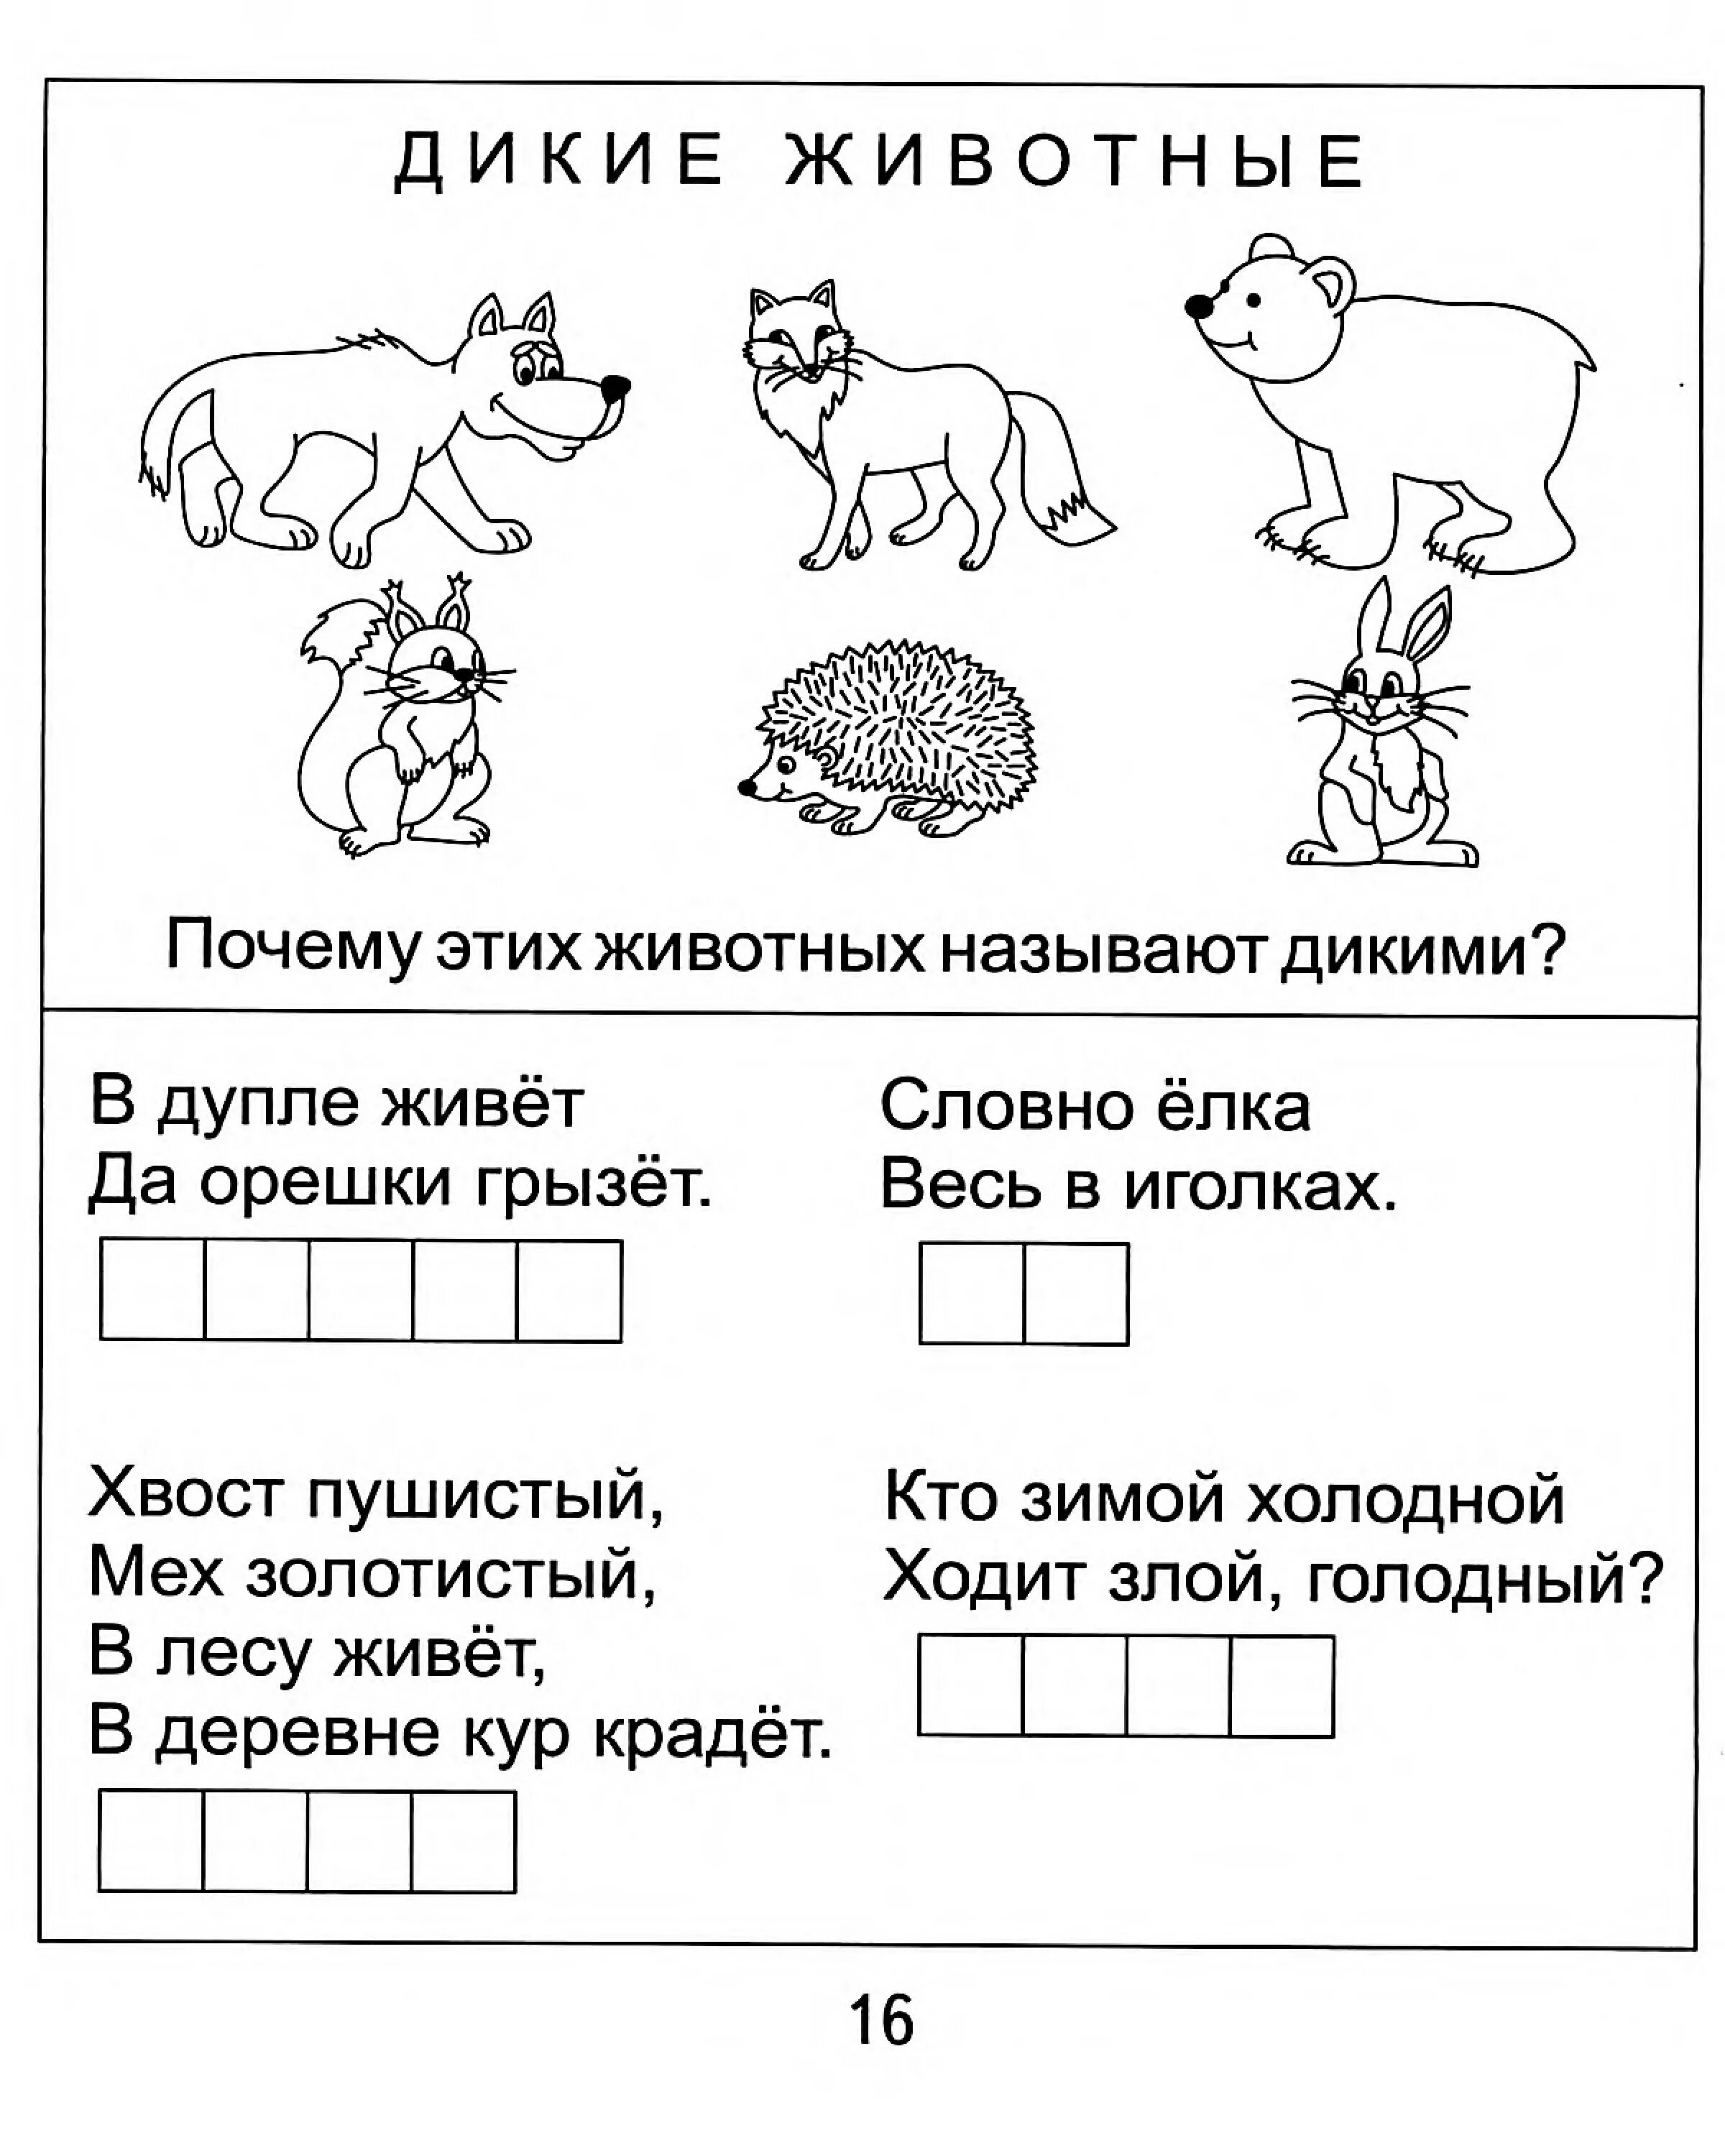 Русский язык 5 лет задания распечатать. Задания для дошкольников. Задания ИПО окружающему миру для дошкольников. Карточки с заданиями для дошкольников. Интересные задания.